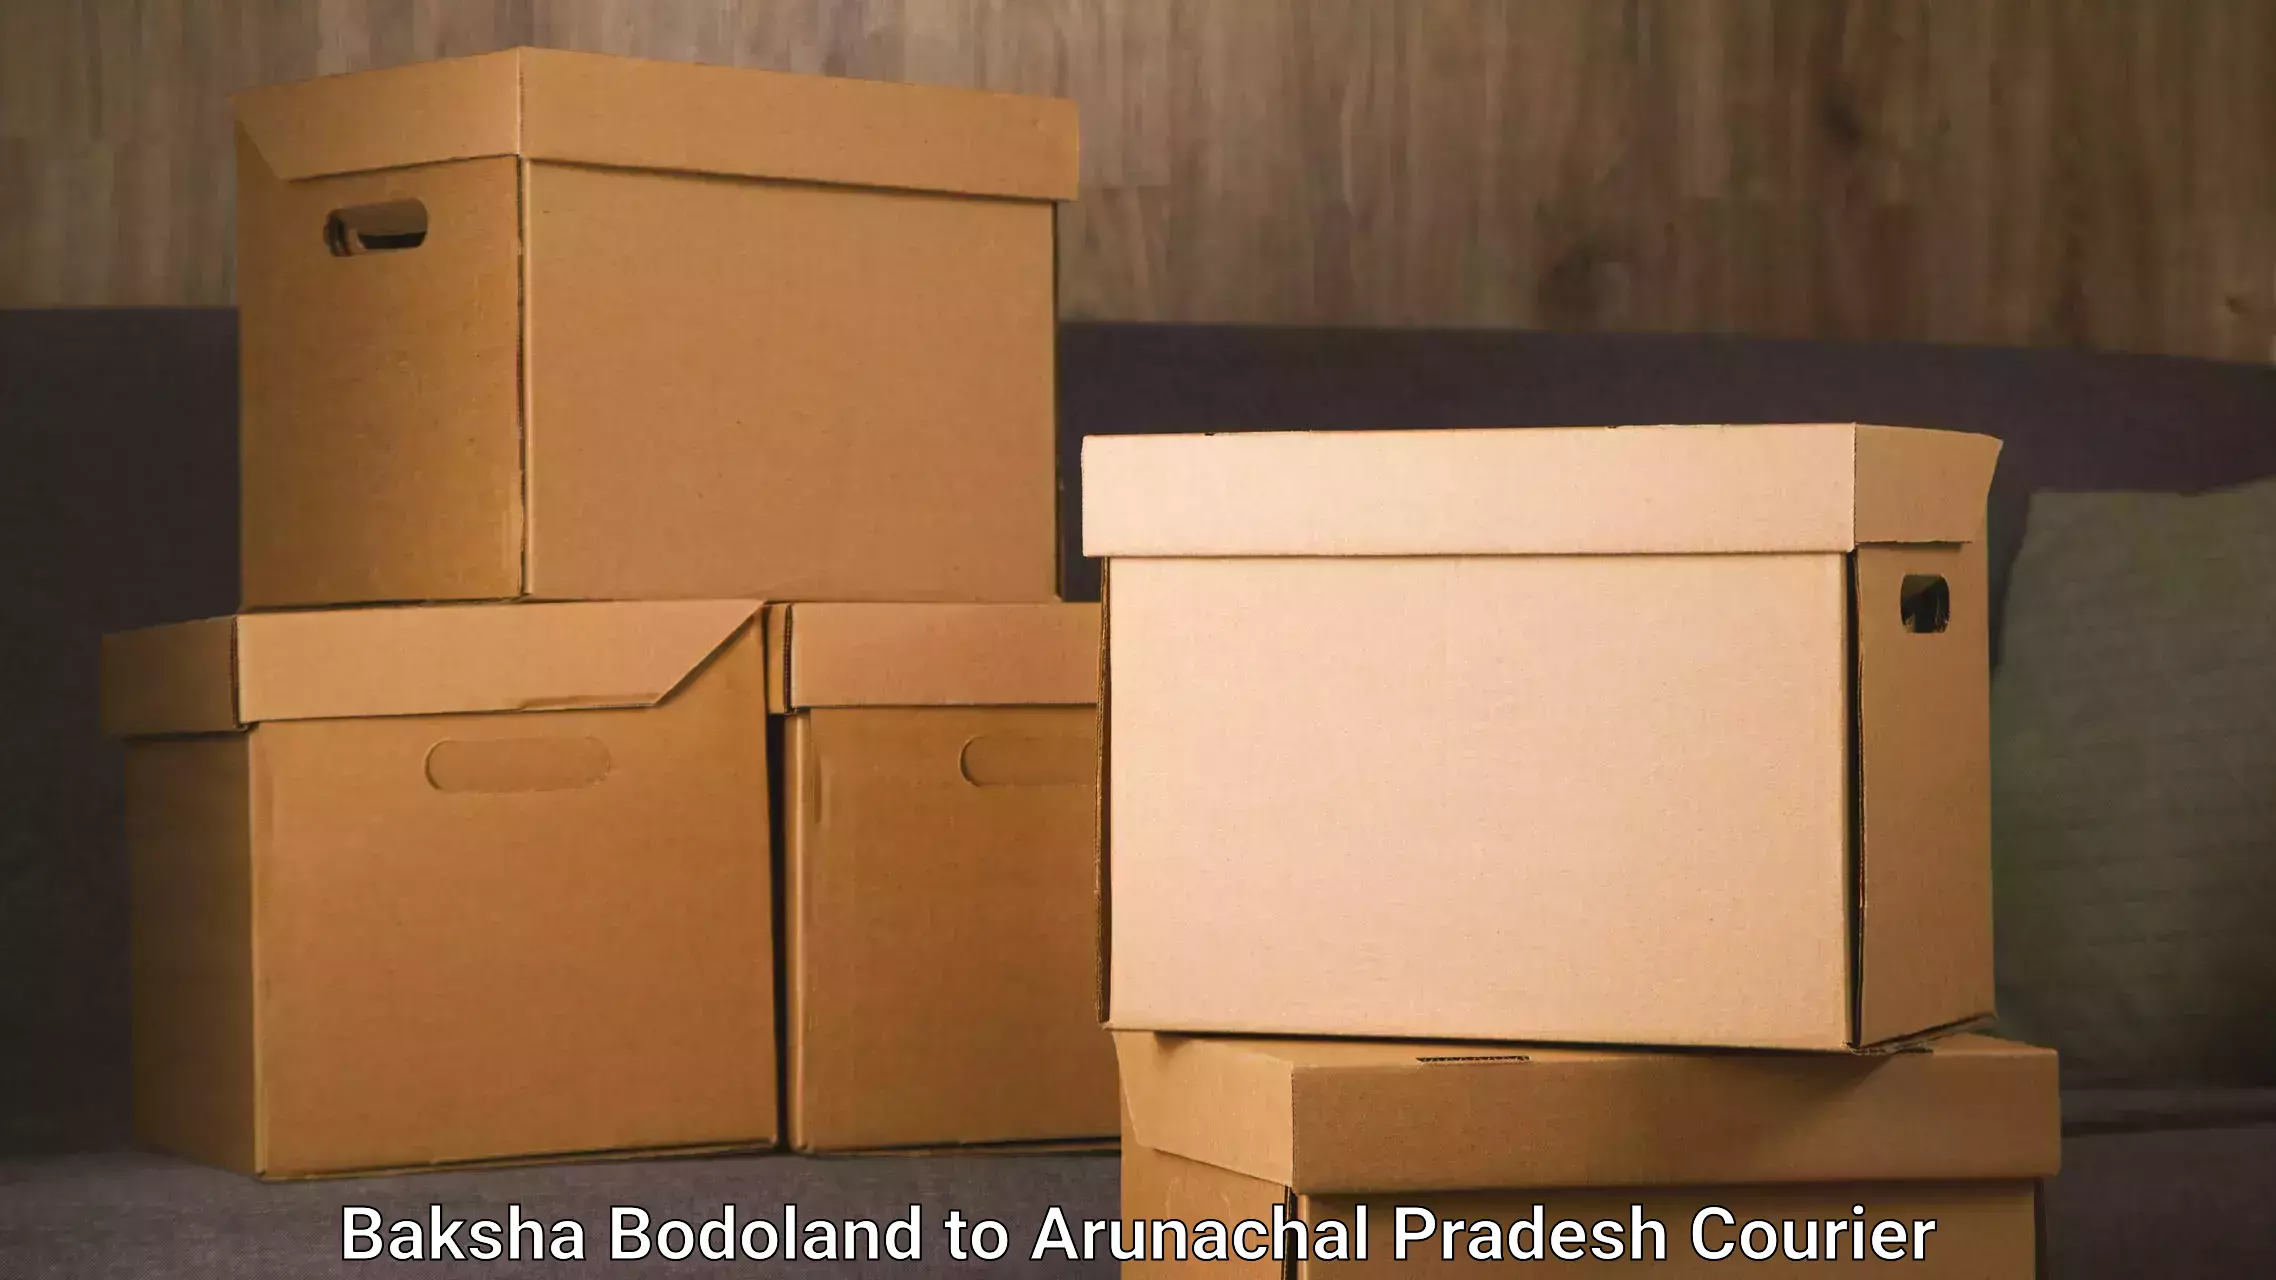 Reliable parcel services Baksha Bodoland to Pasighat